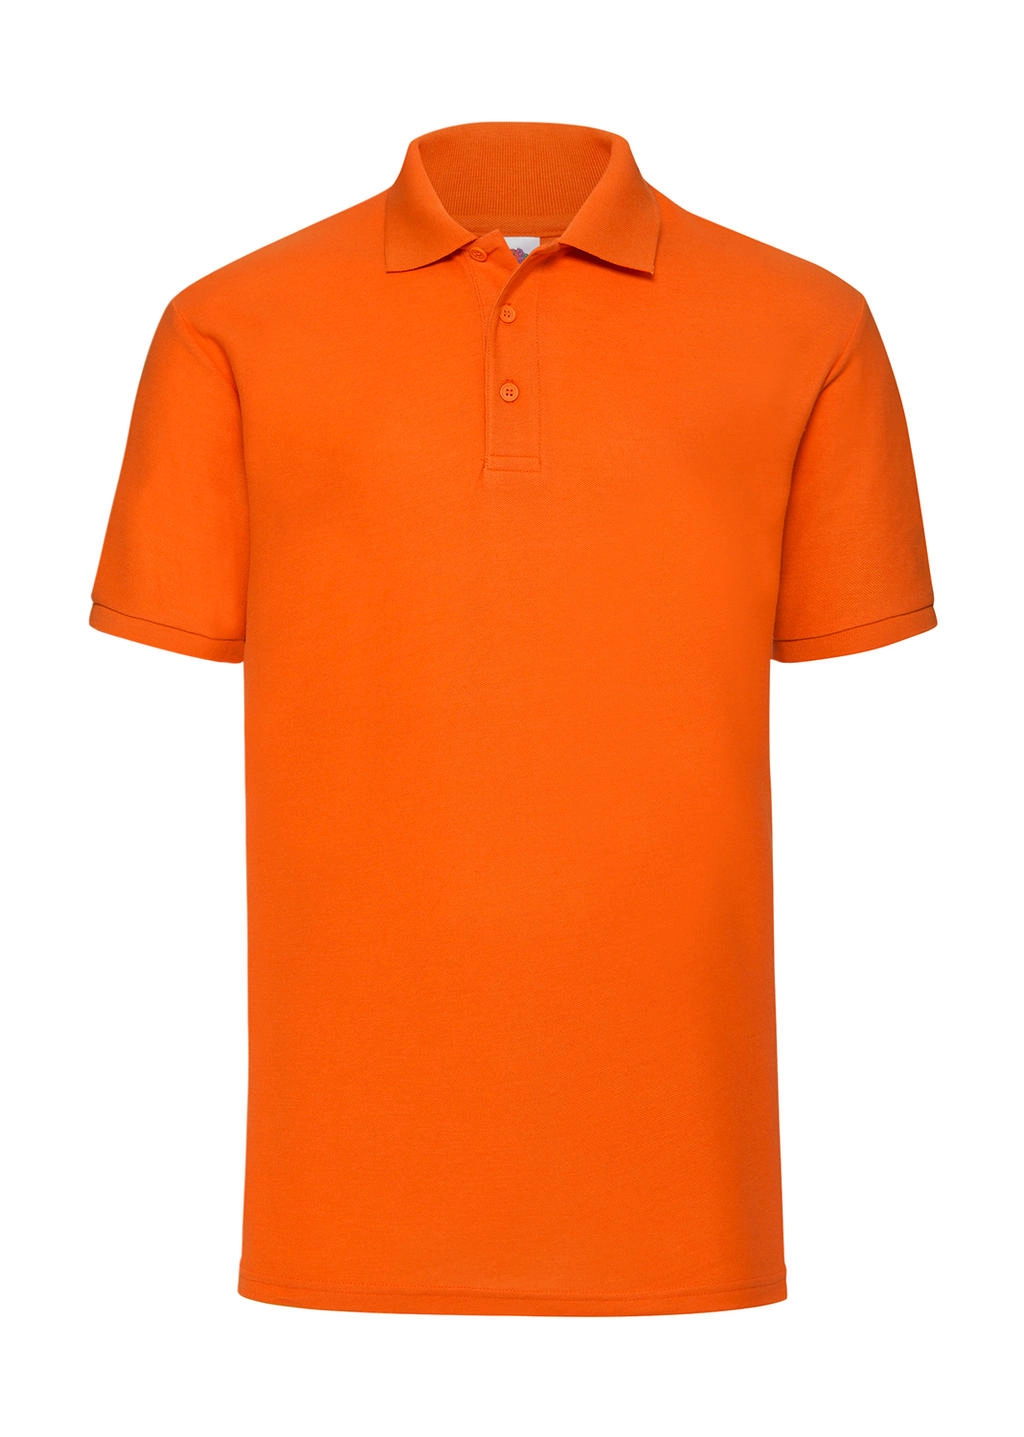 65/35 Polo zum Besticken und Bedrucken in der Farbe Orange mit Ihren Logo, Schriftzug oder Motiv.